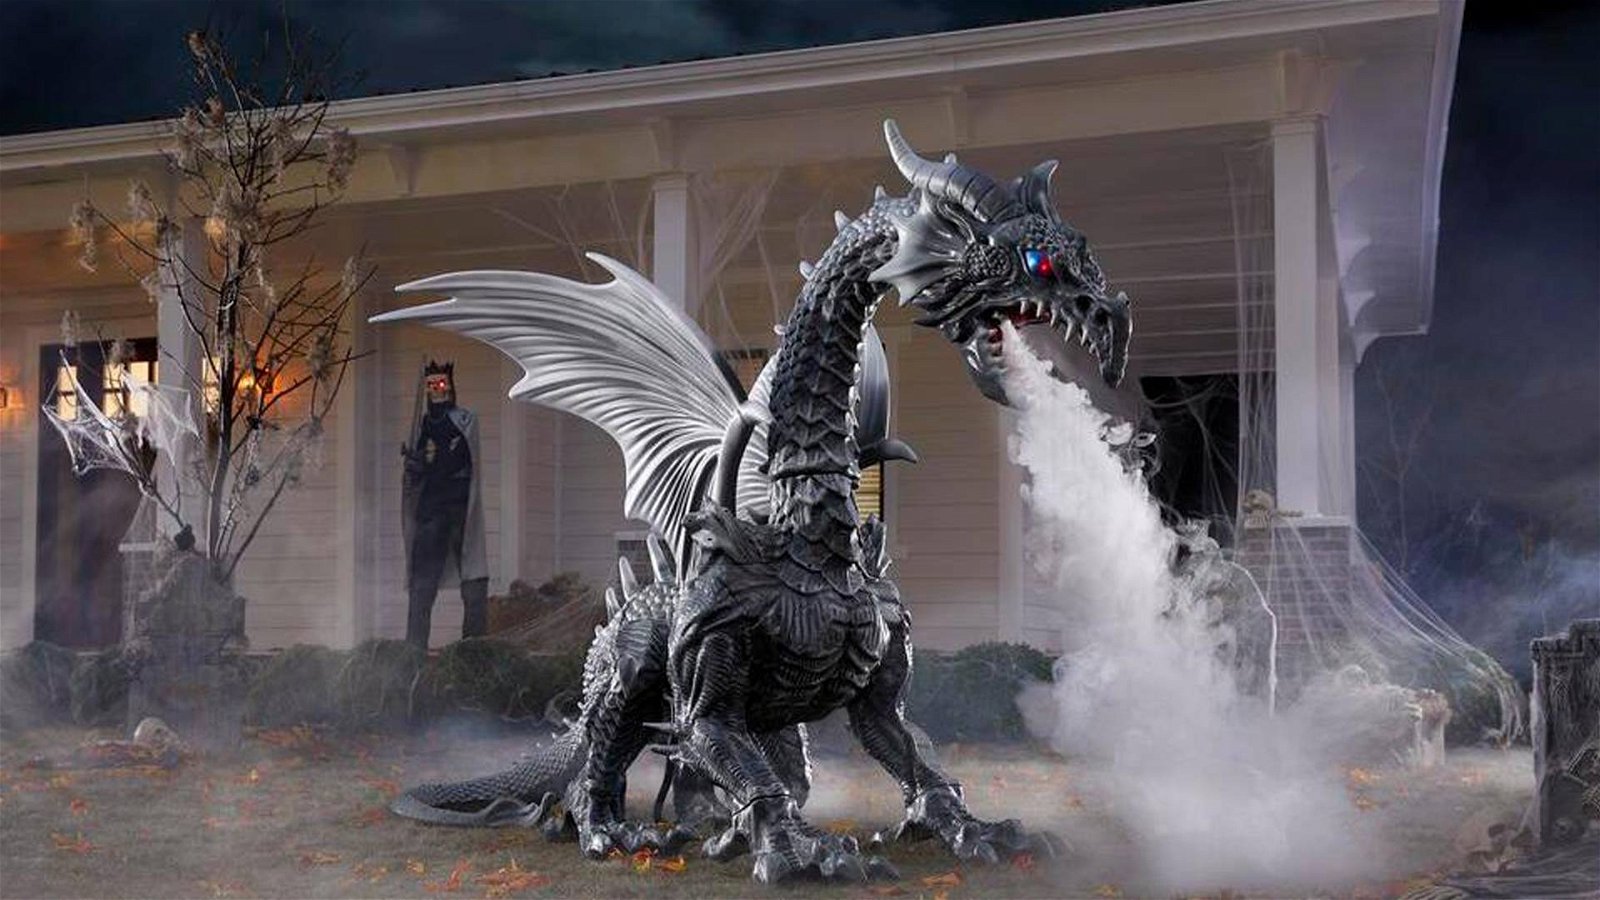 Immagine di Da Home Depot arriva il drago da salotto!